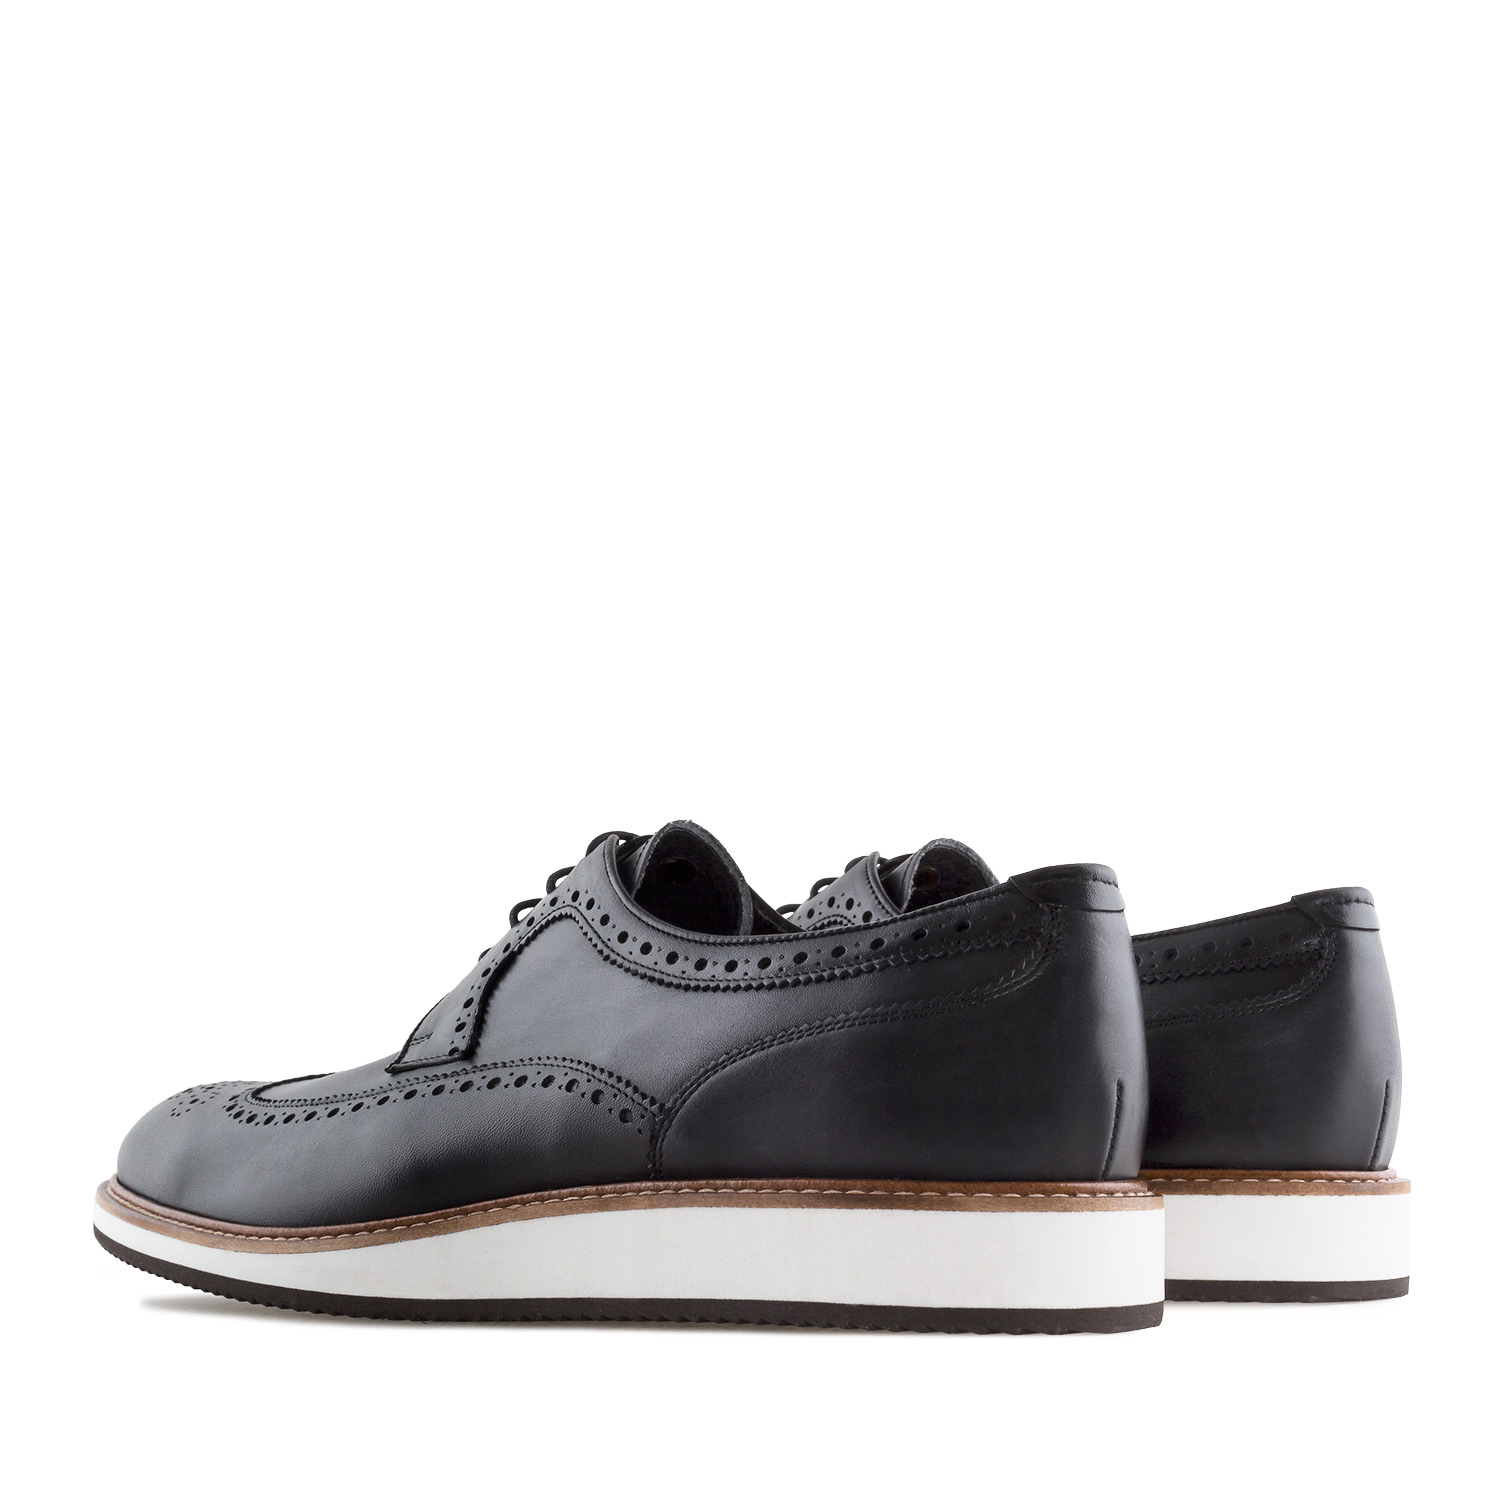 Chaussures Style Oxford en Couleur Noir 